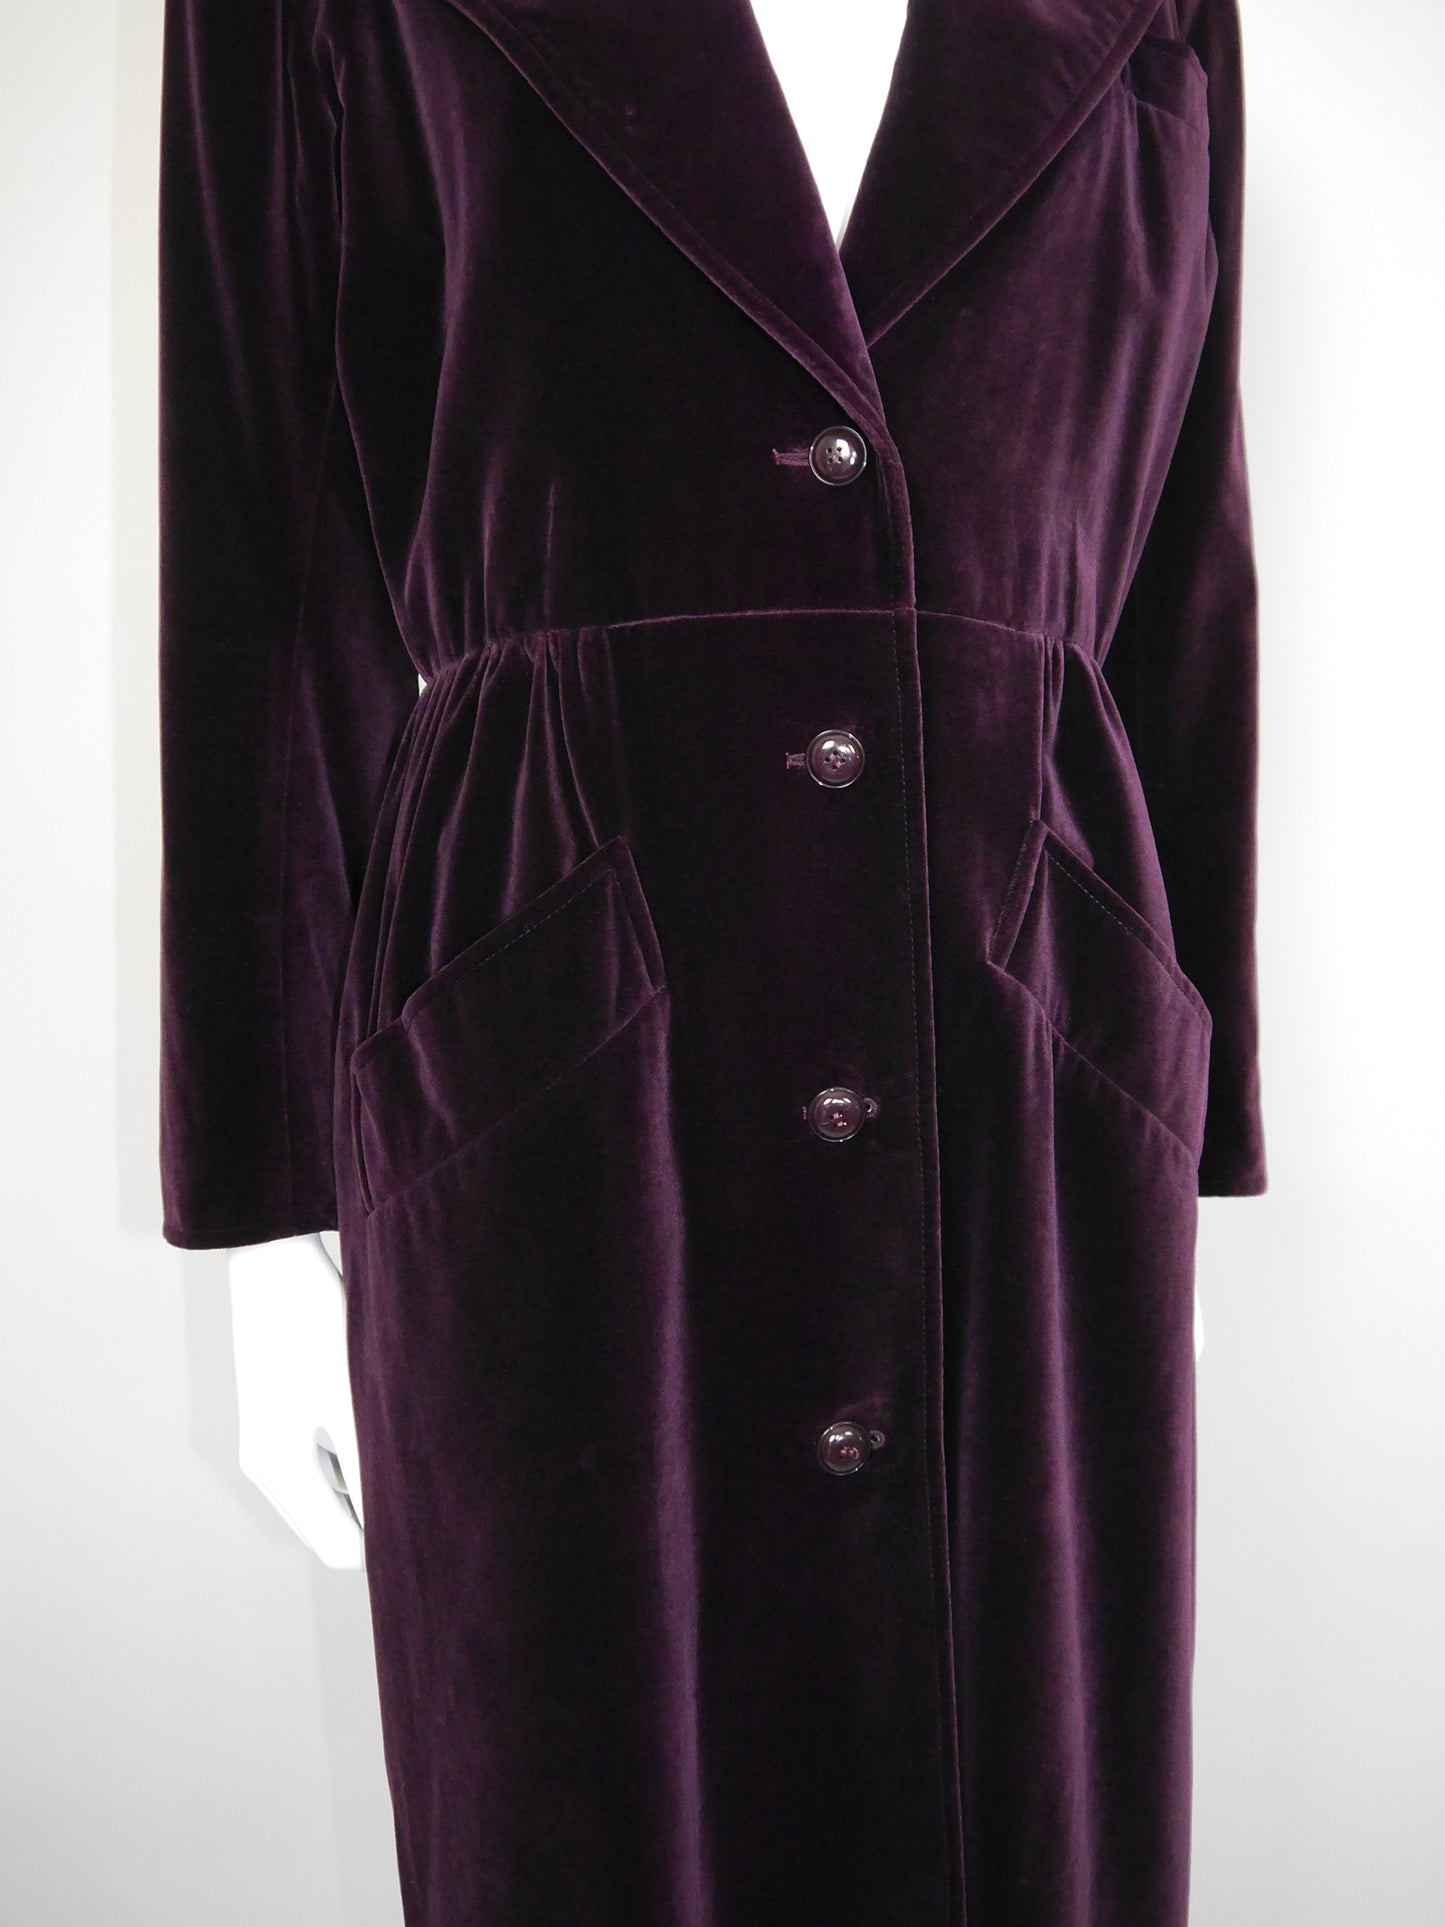 YVES SAINT LAURENT 1970s 1980s Vintage Dark Burgundy Velvet Coat Size S-M